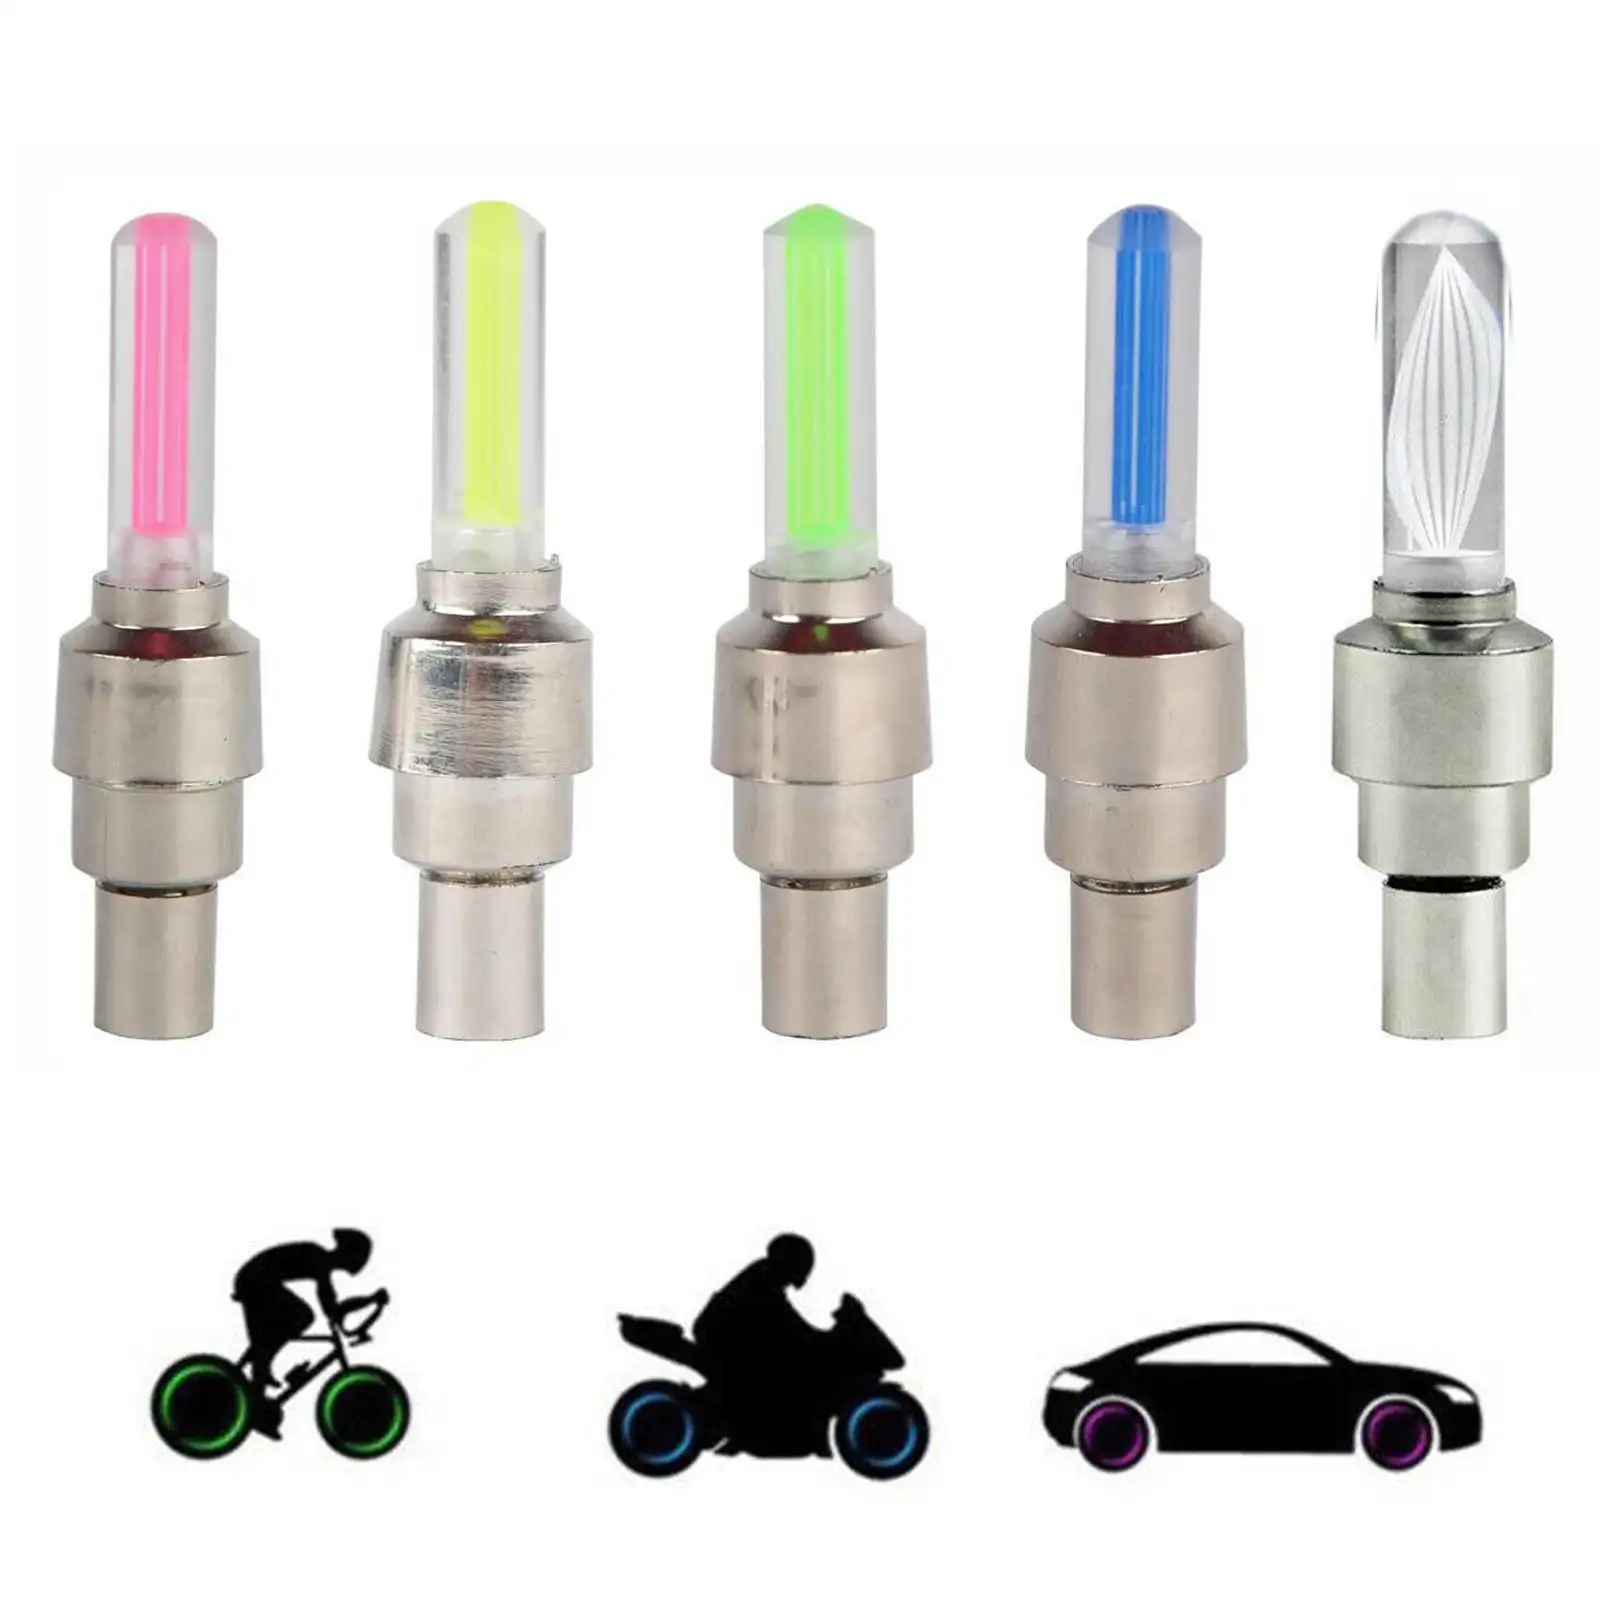 5 색 깜박이 방수 LED 휠 라이트 자전거 타이어 밸브 조명 자동차 자전거 오토바이